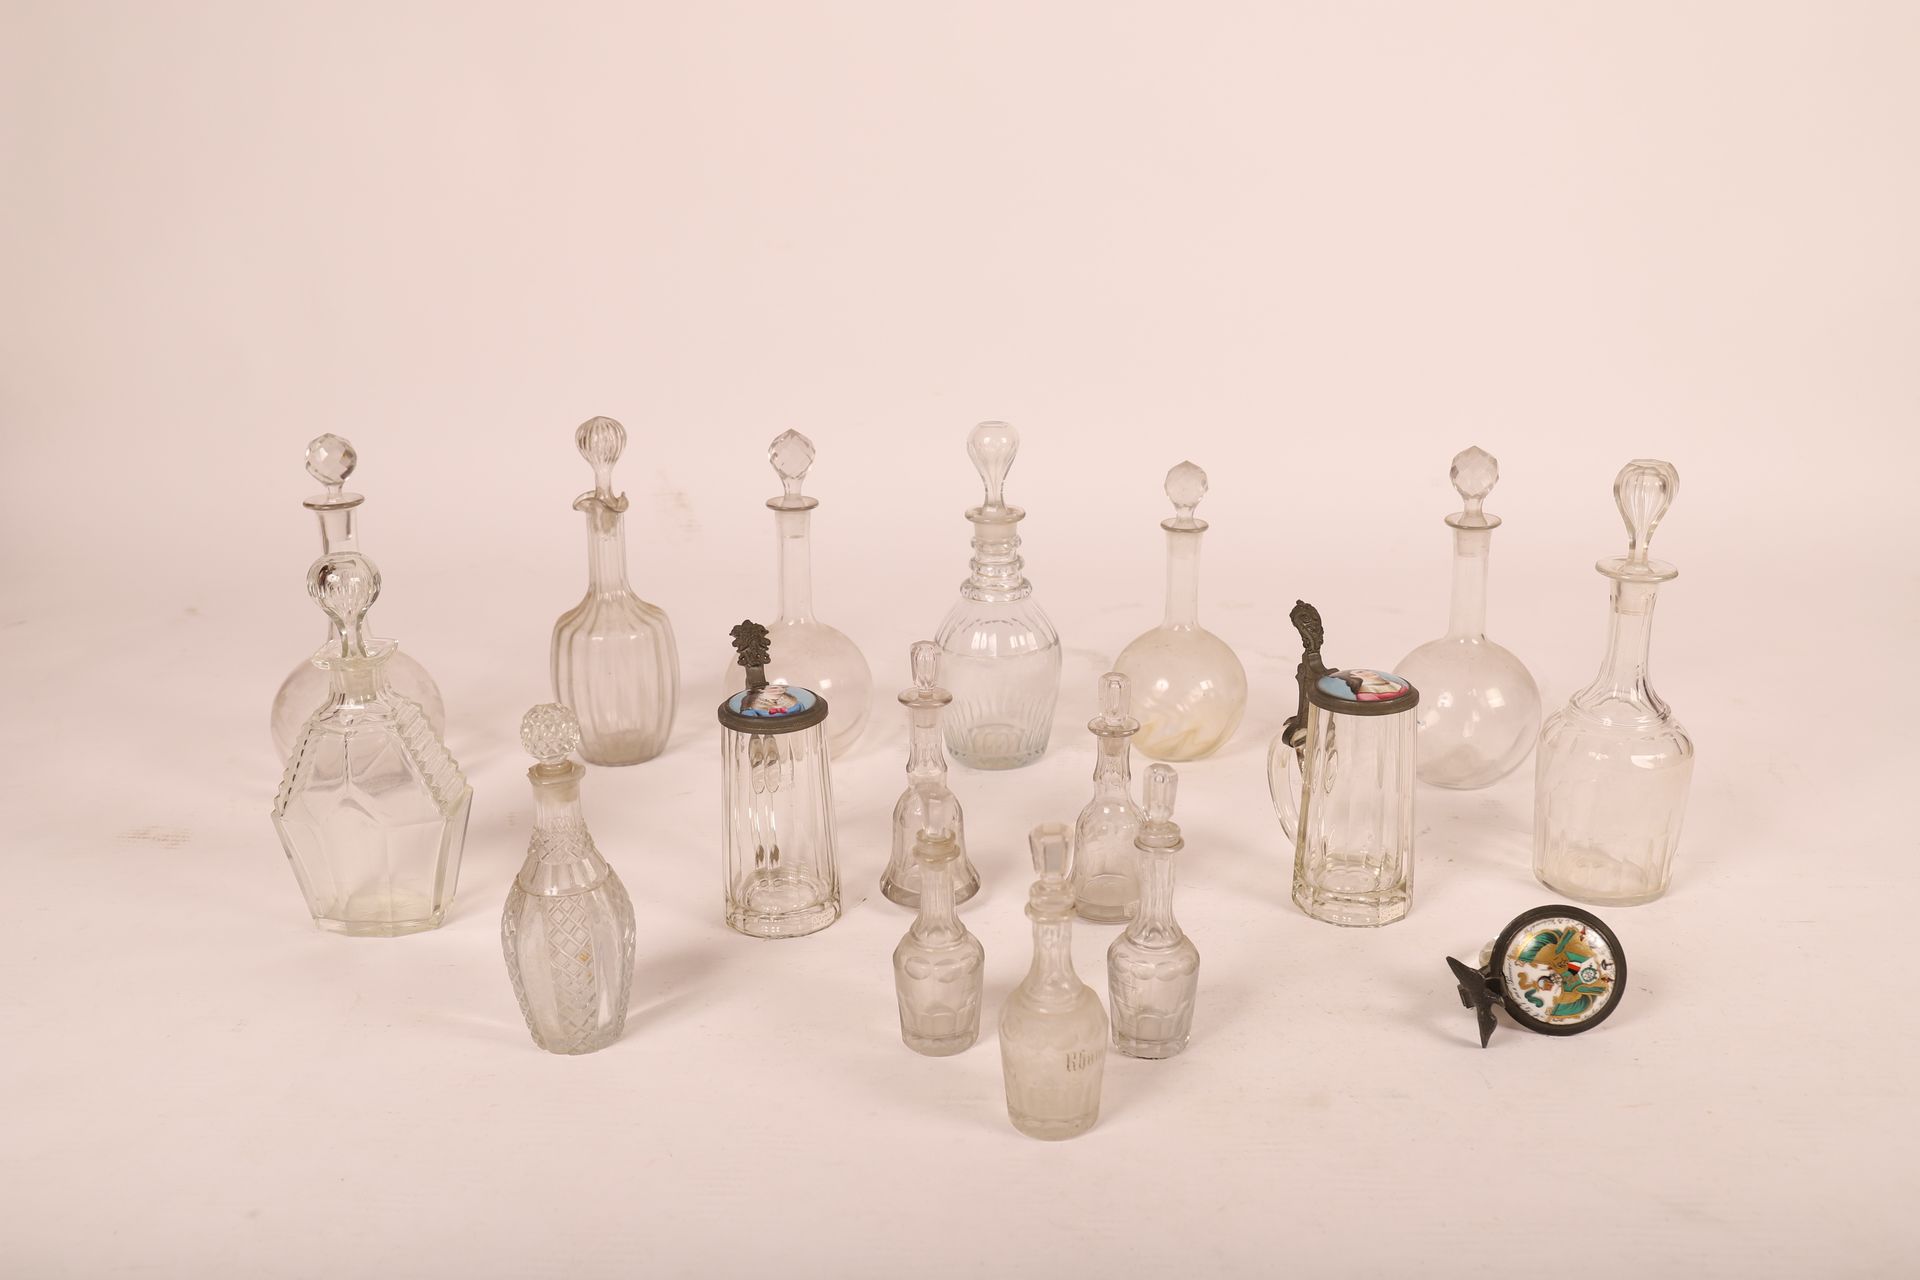 Null 强大的一批水杯、烧瓶、马克杯...... 
水晶、锡制盖子和彩绘陶瓷
高达32厘米，包括瓶塞
意外事件